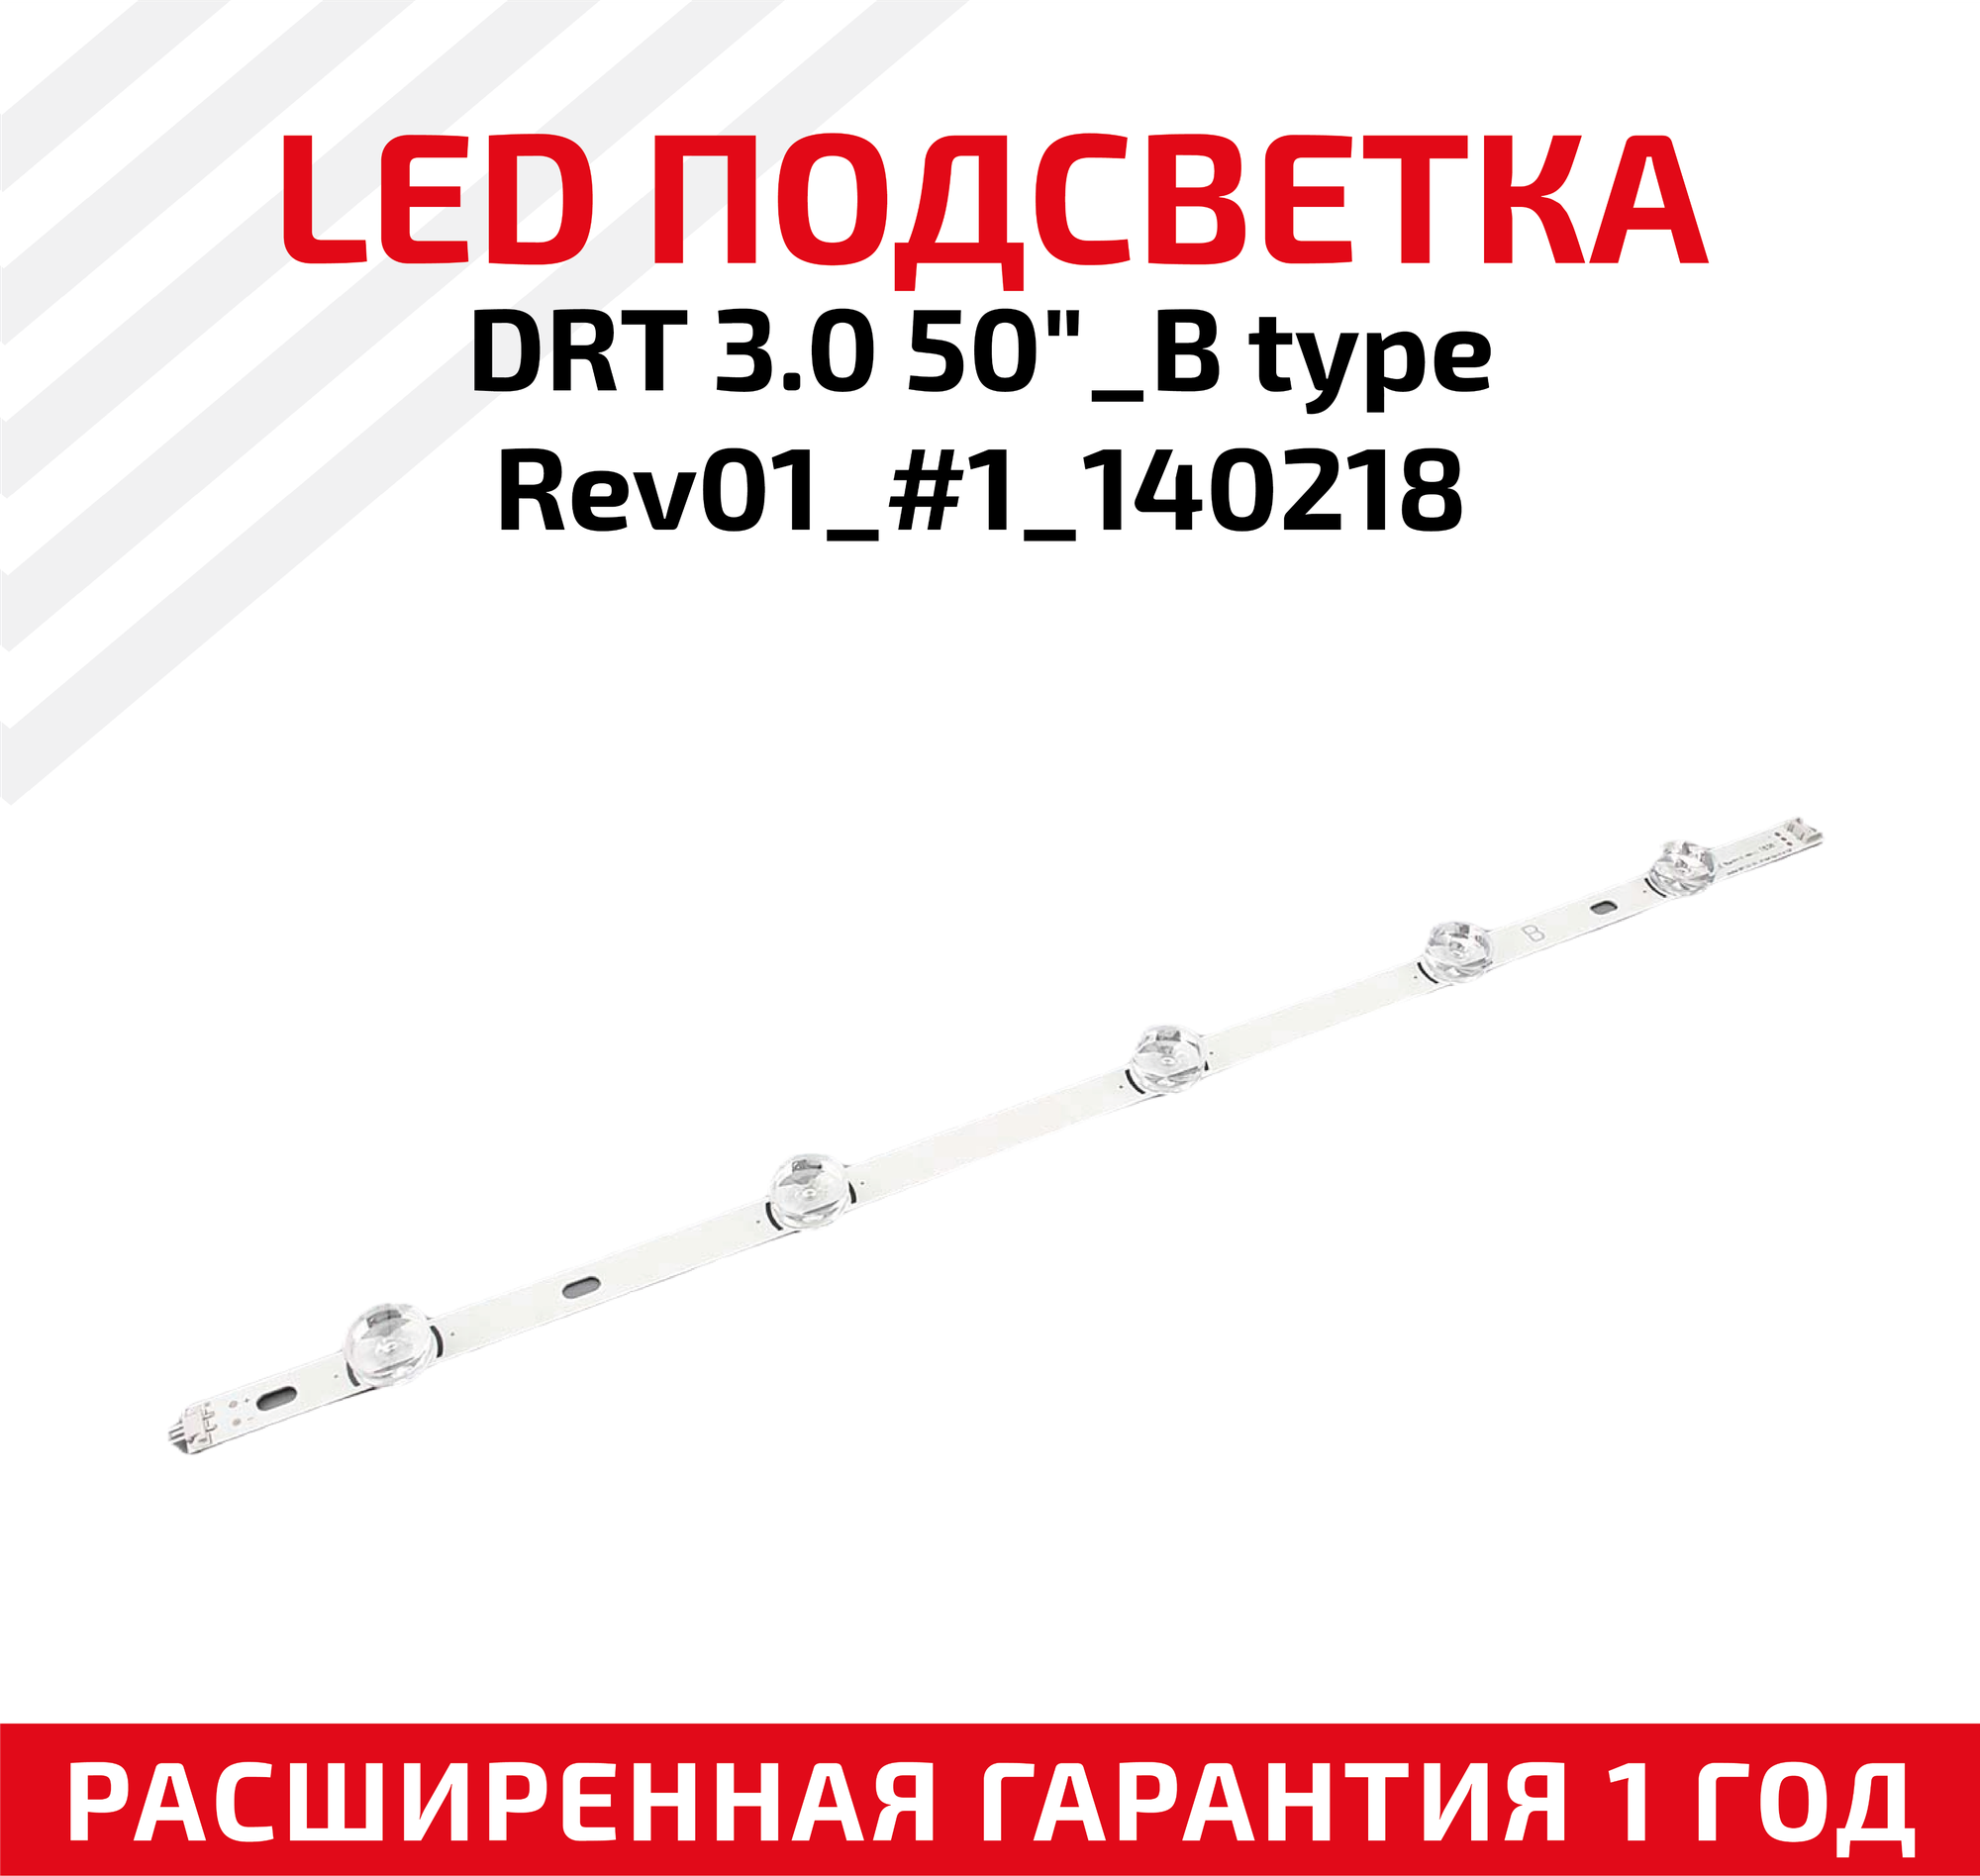 LED подсветка (светодиодная планка) для телевизора DRT 3.0 50"_B type Rev01_#1_140218